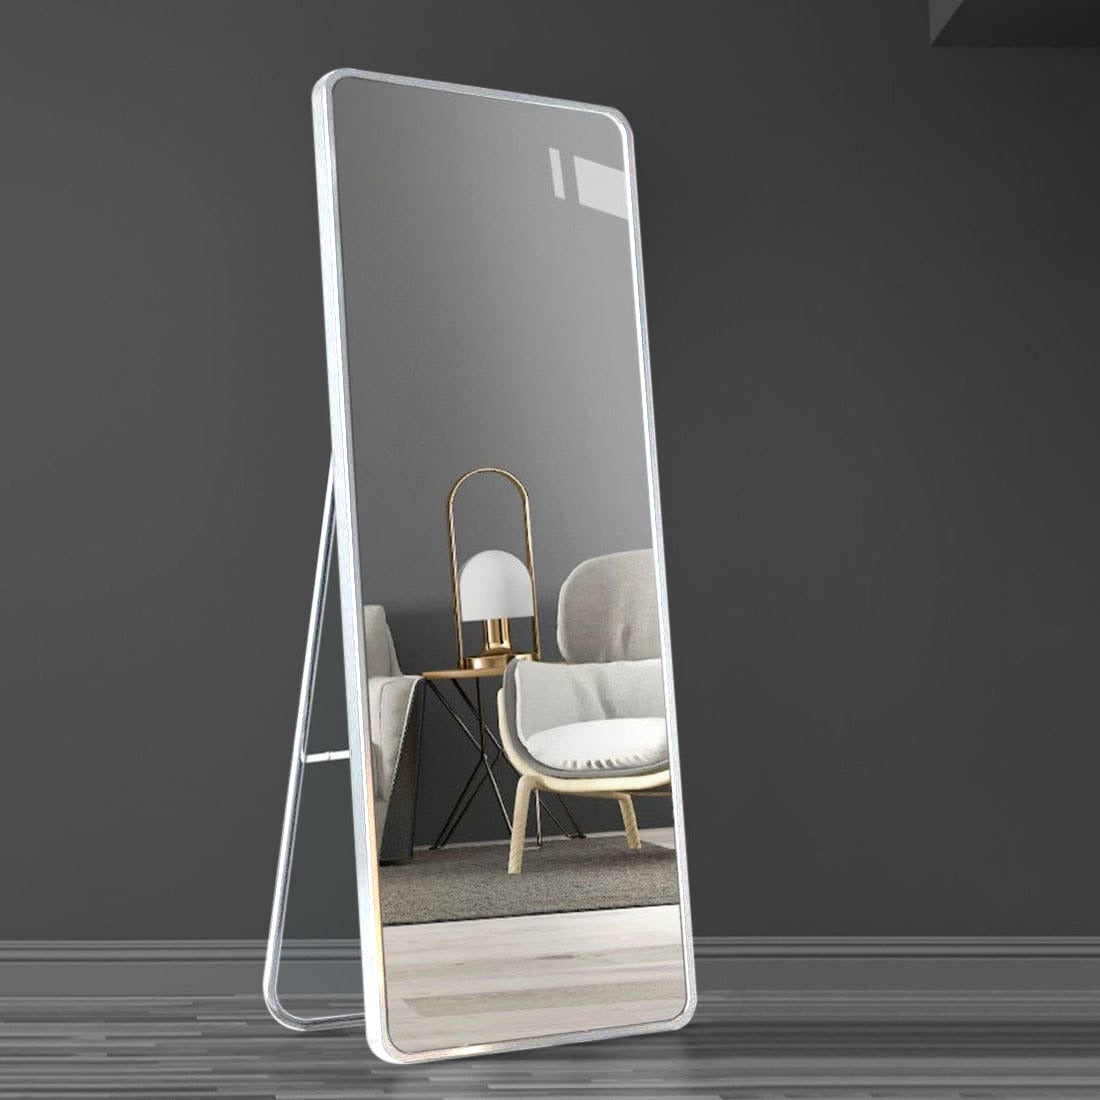 Large Full-Length Dressing Mirror for Bedroom in White Variant.